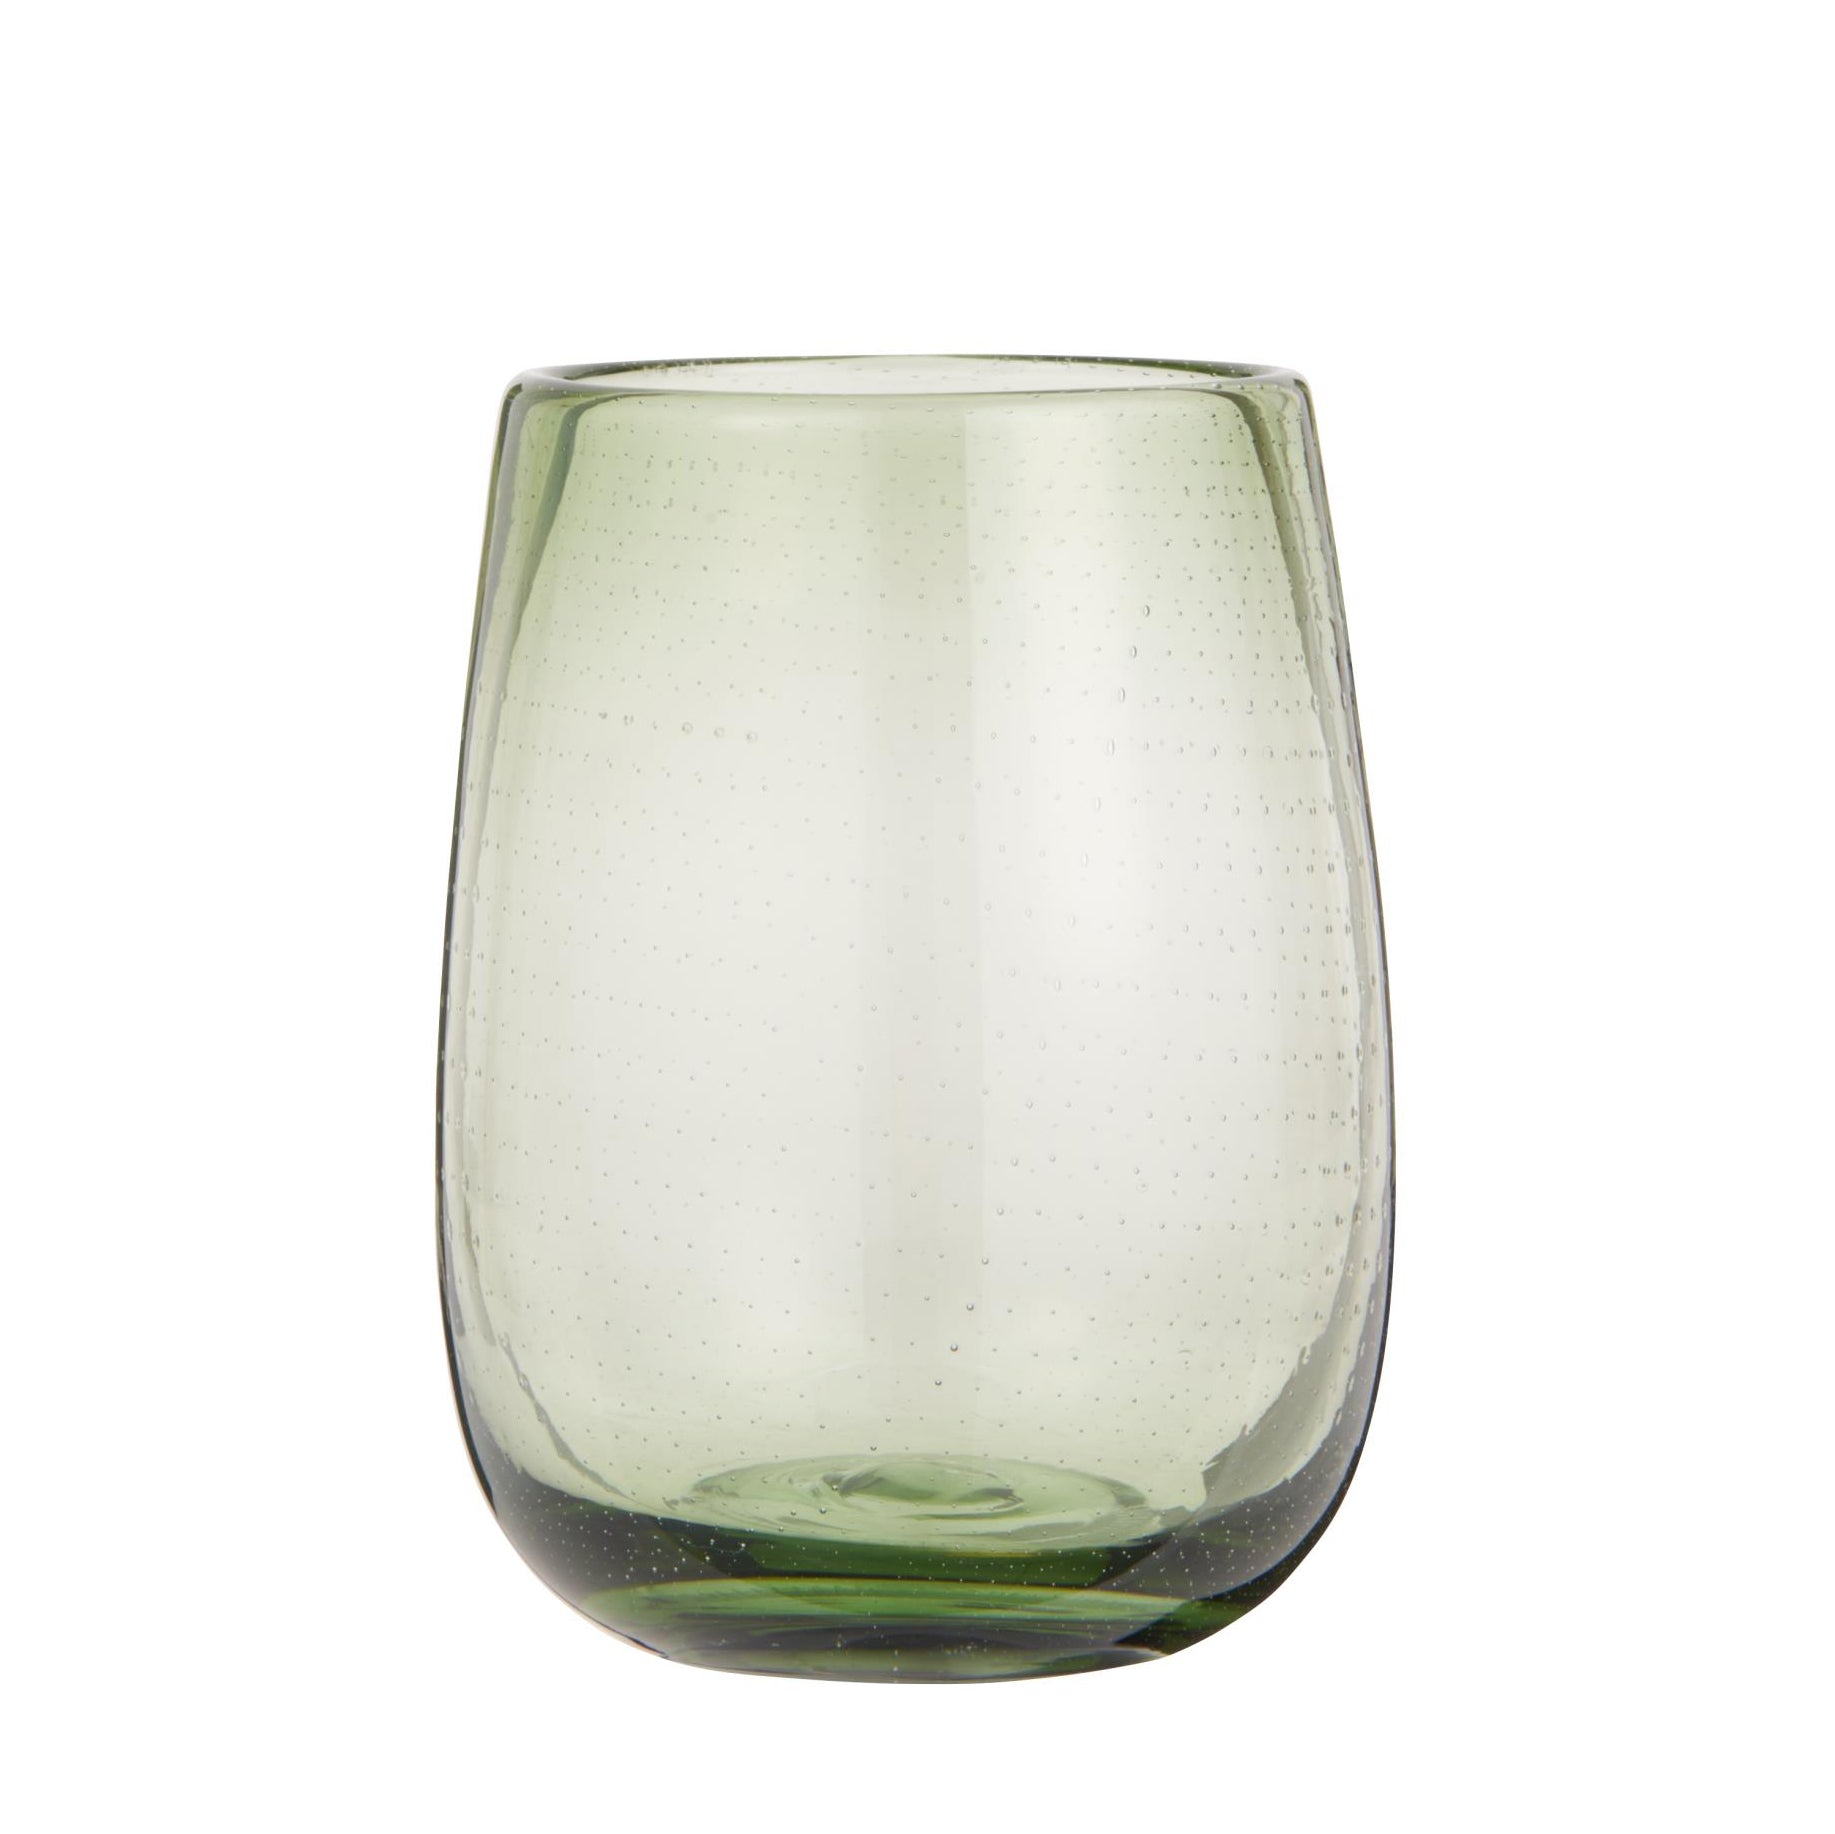 Stor vase med bobler i olivengrøn farve. Vasens smukke grønne nuancer giver et flot look.